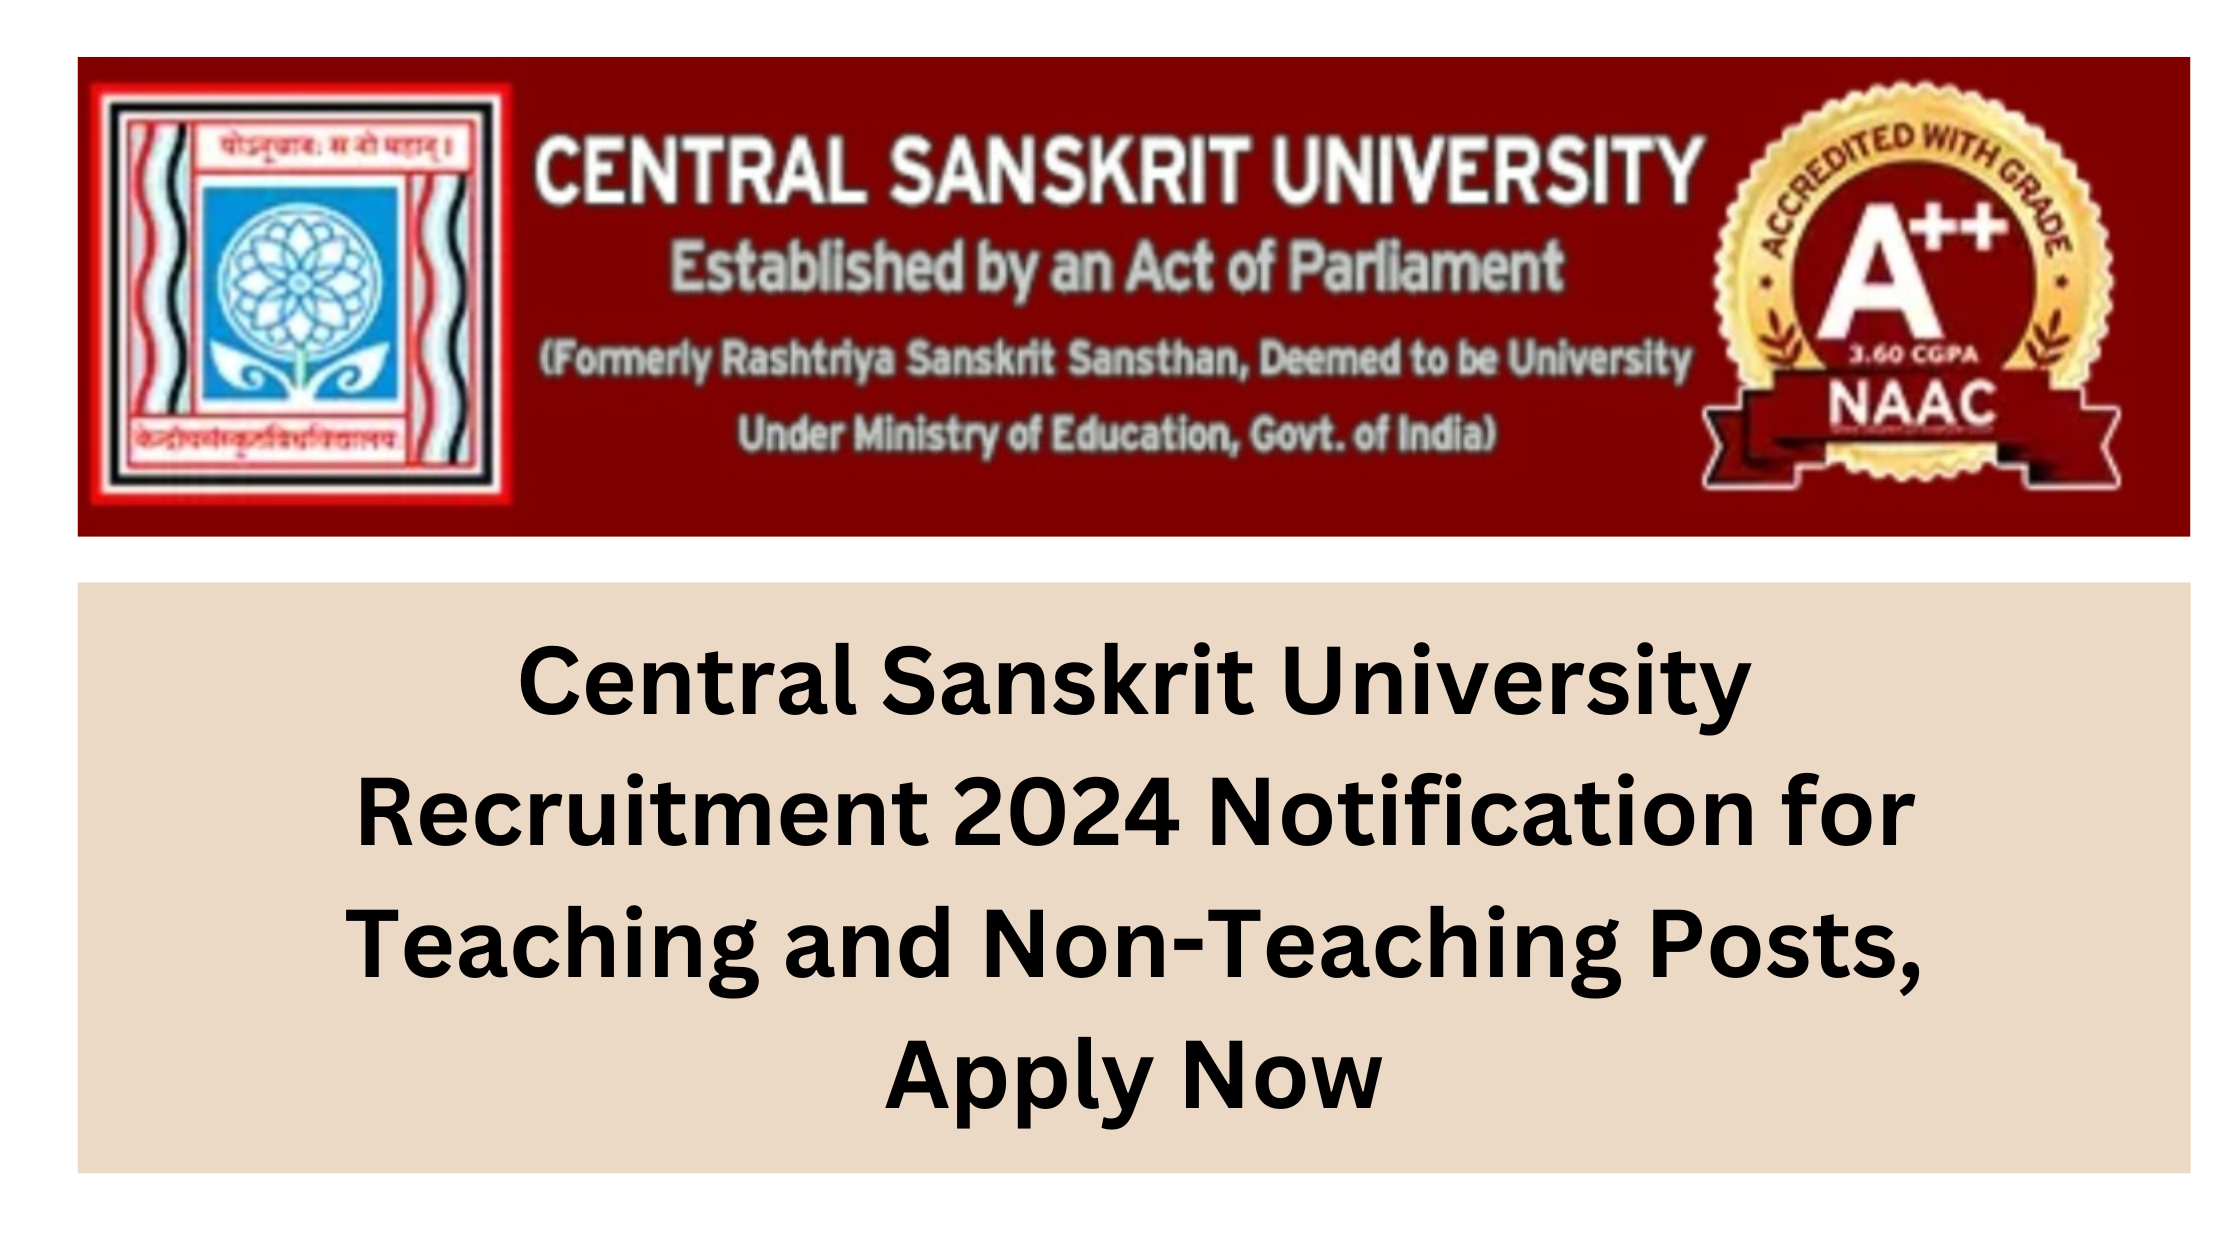 Central Sanskrit University